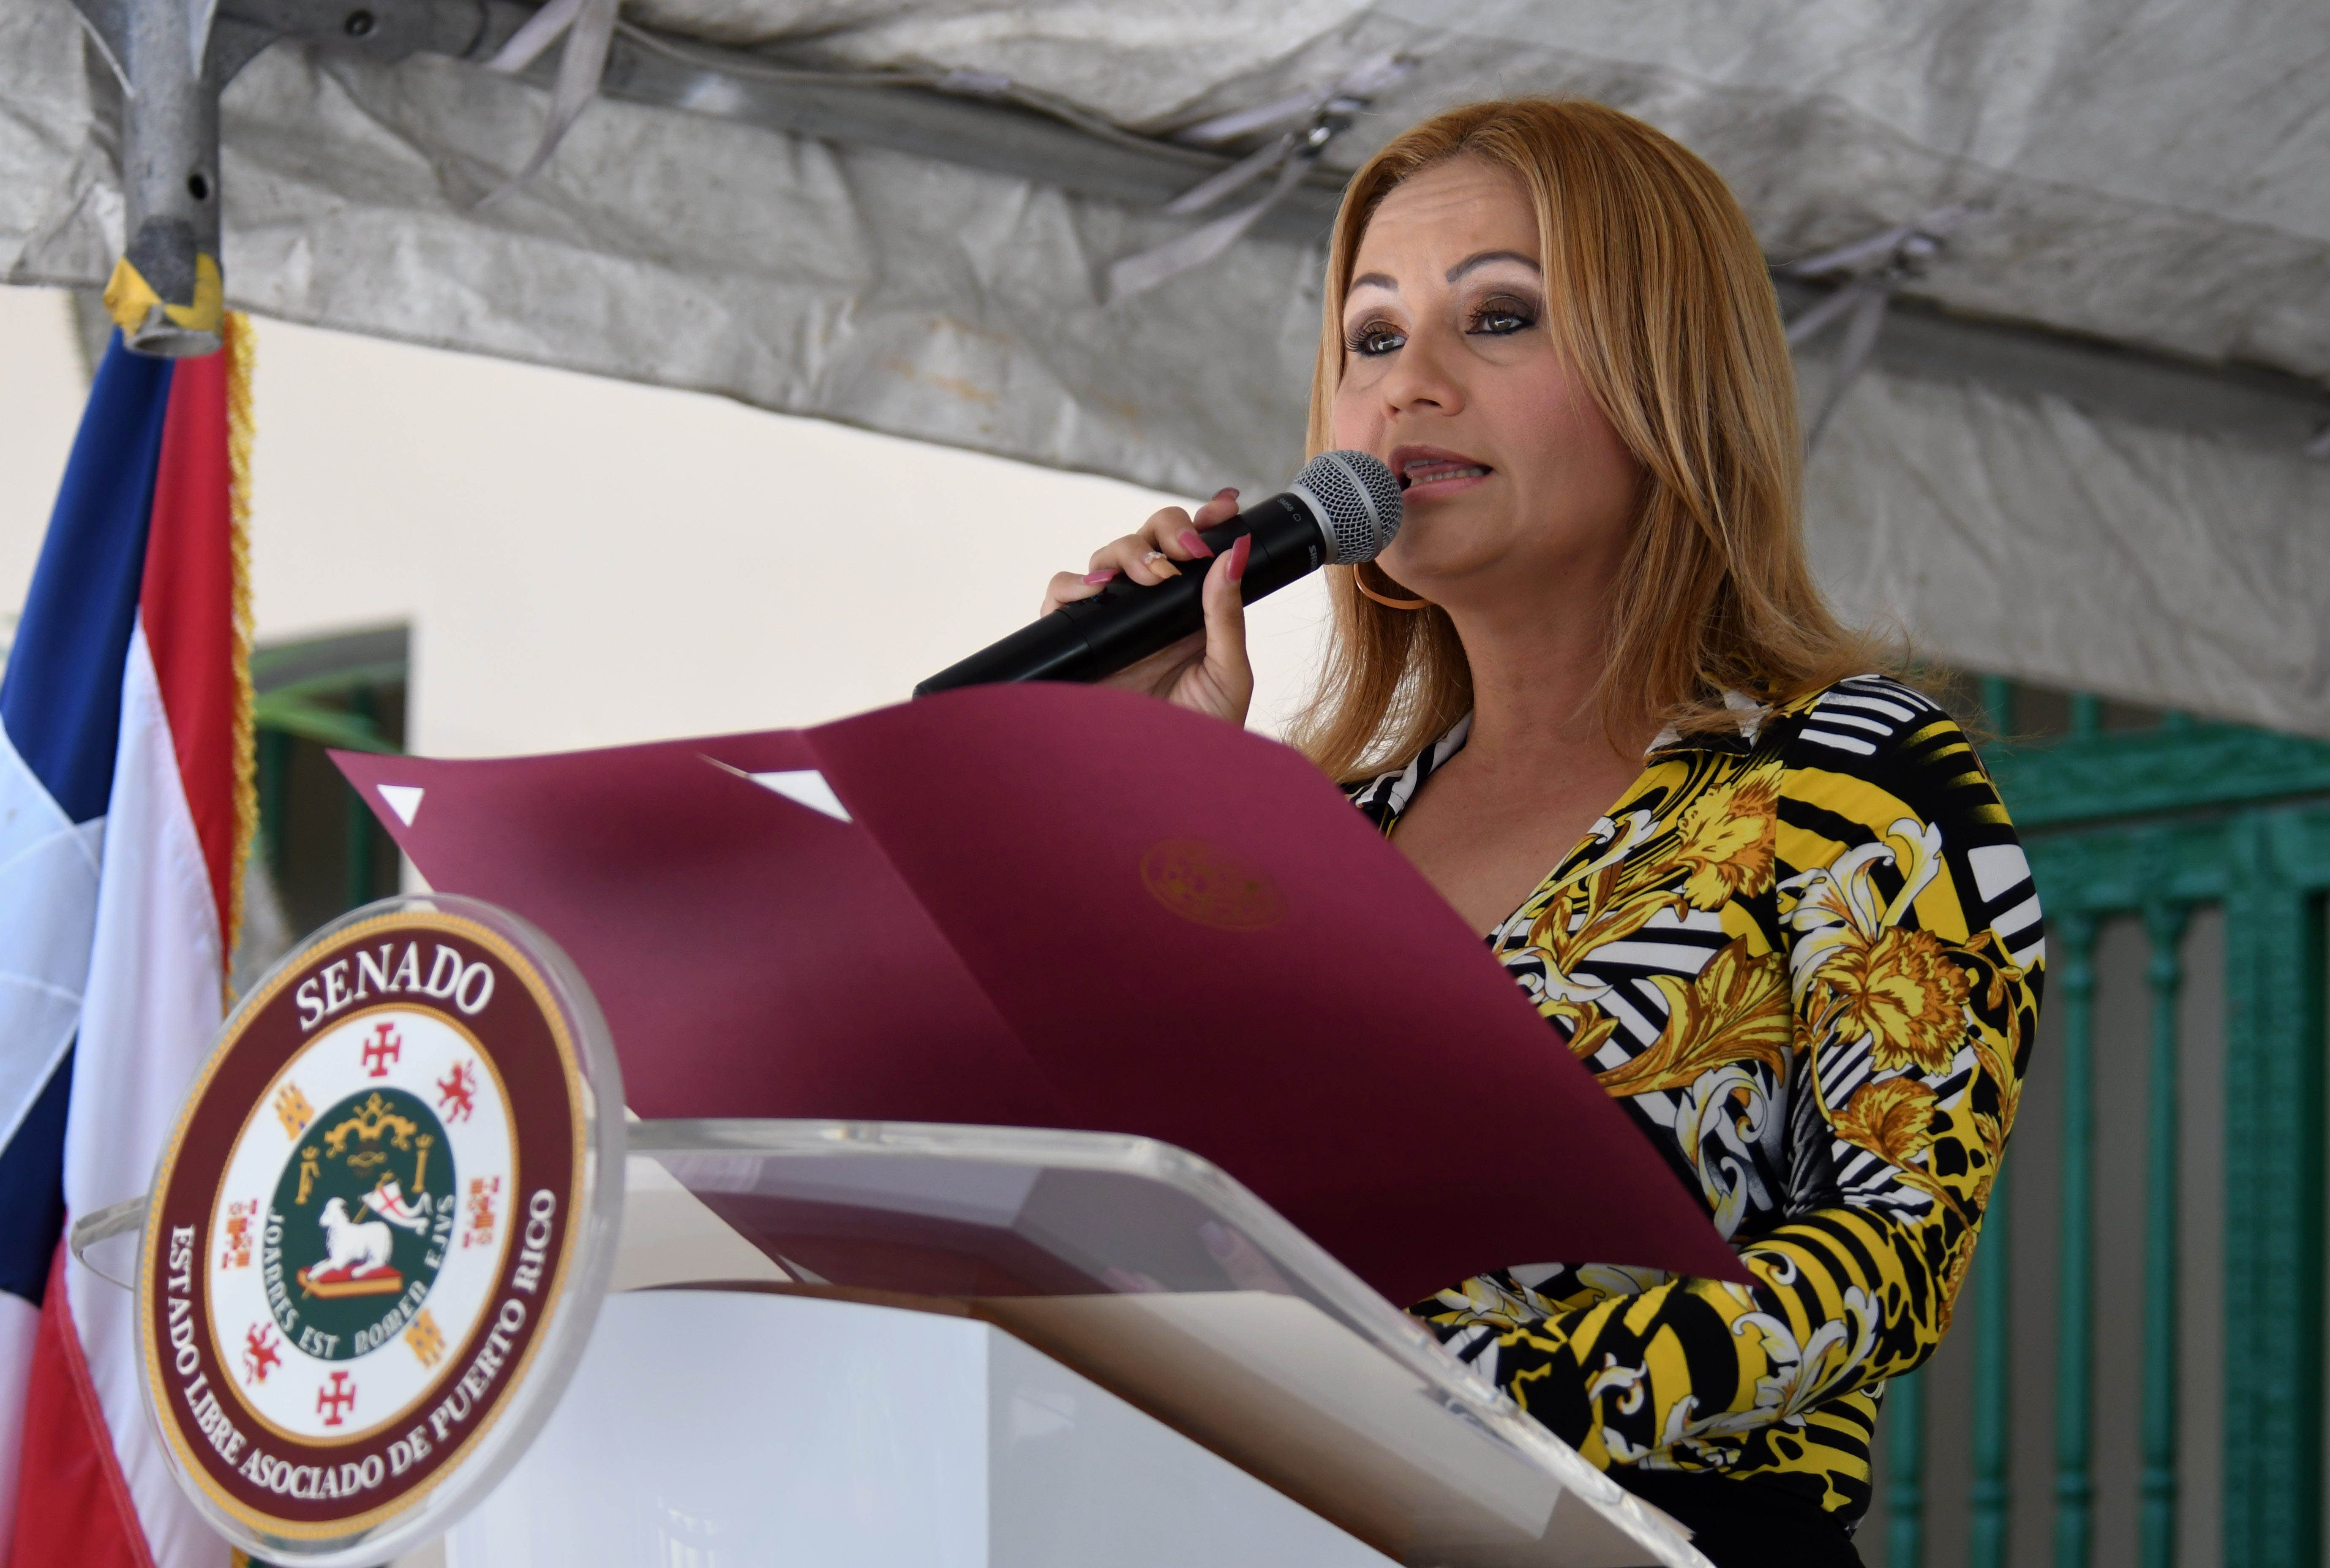 La senadora García Montes entregó una moción de reconocimiento a todos los homenajeados.